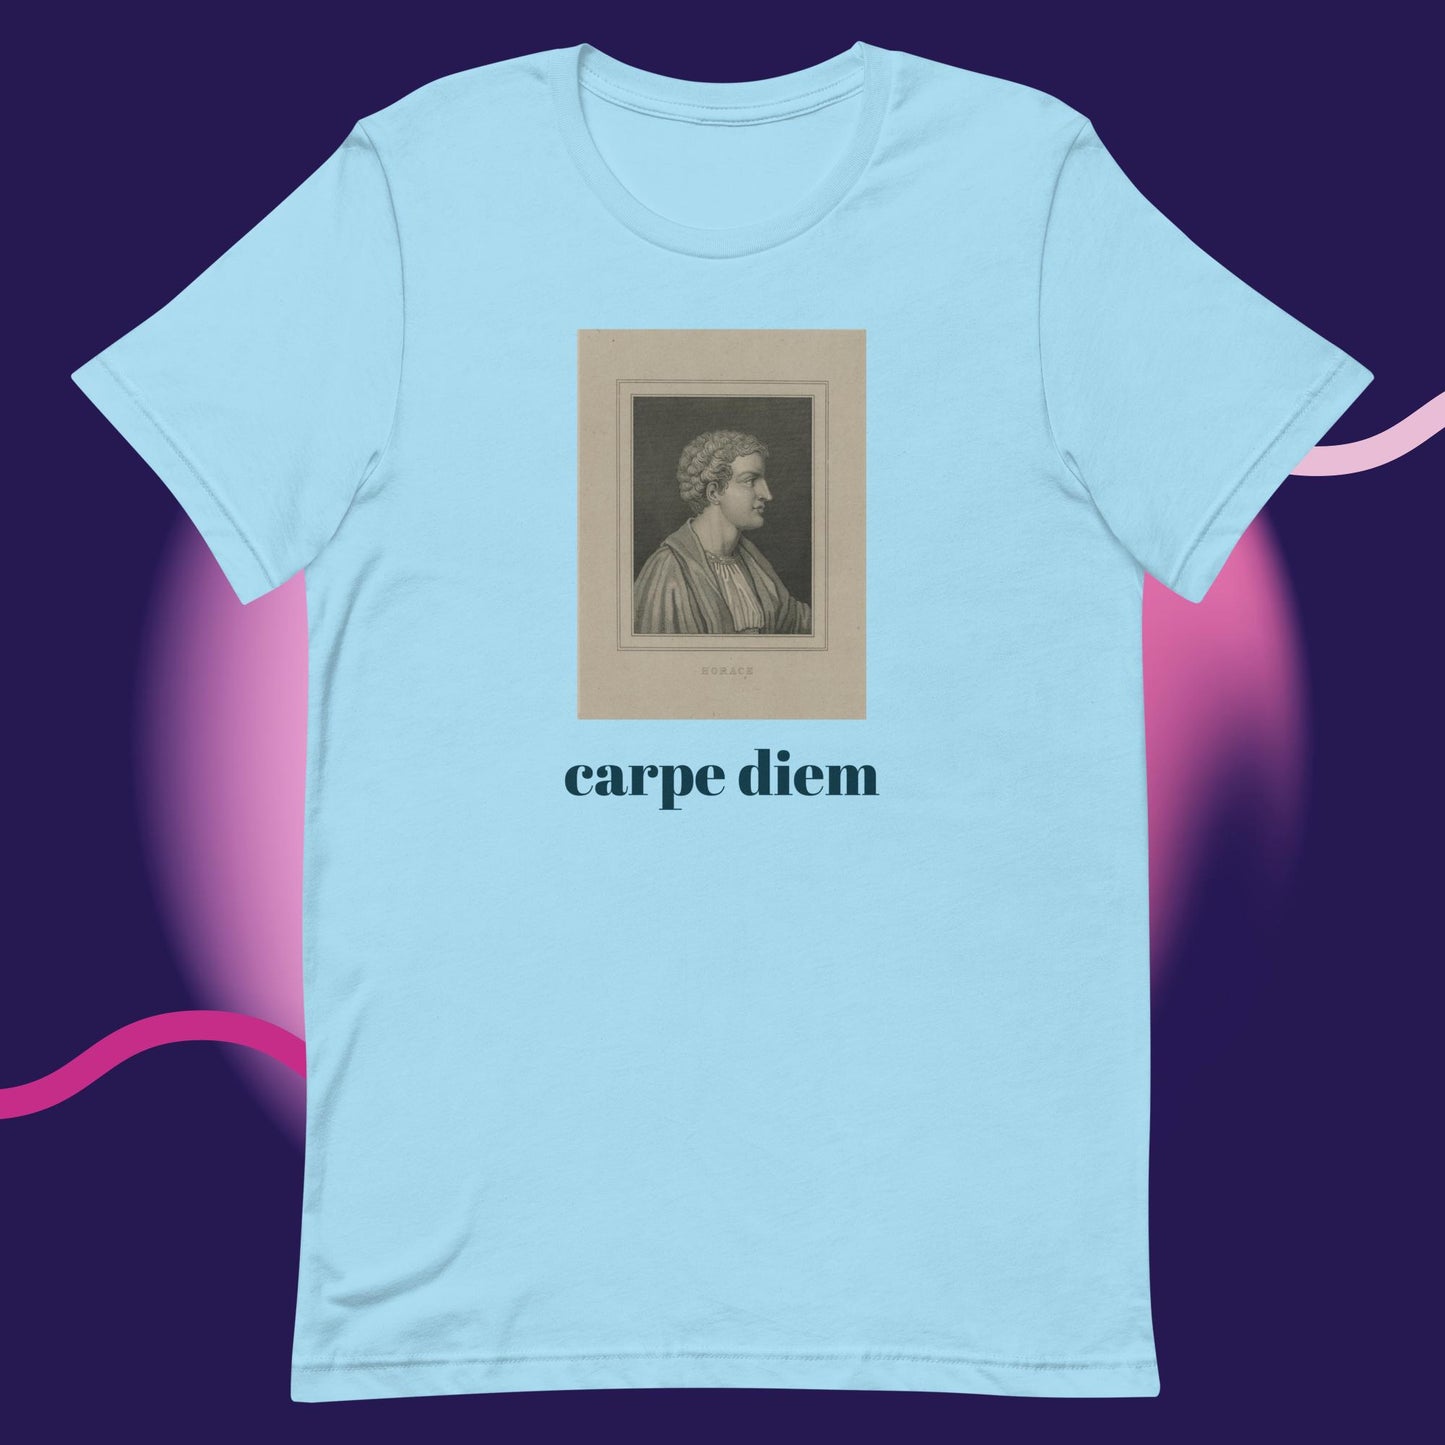 Horace "carpe diem" unisex t-shirt